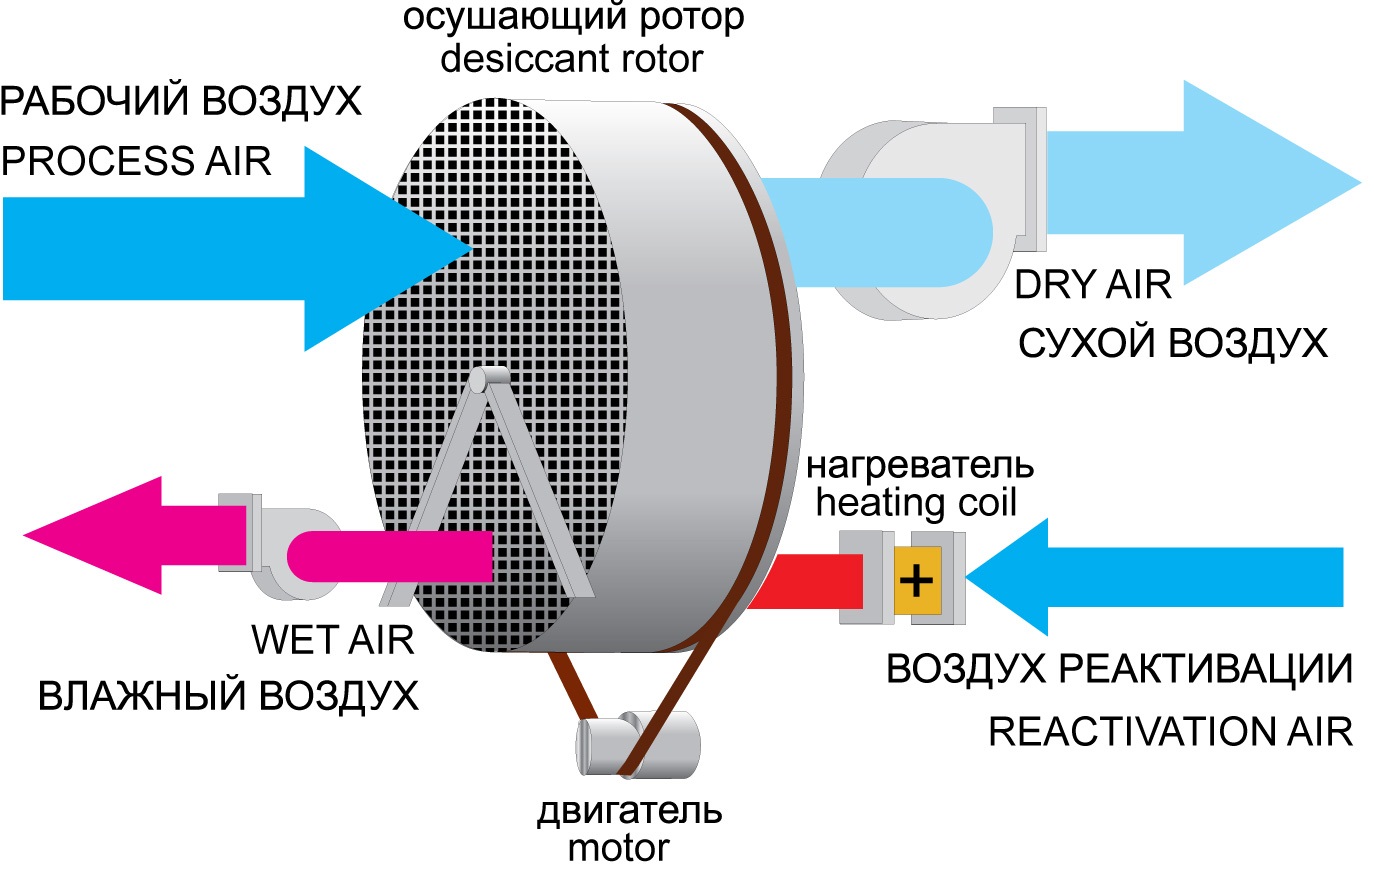 Инструкция по сбору осушителя воздуха своими руками — схема, этапы, необходимые материалы